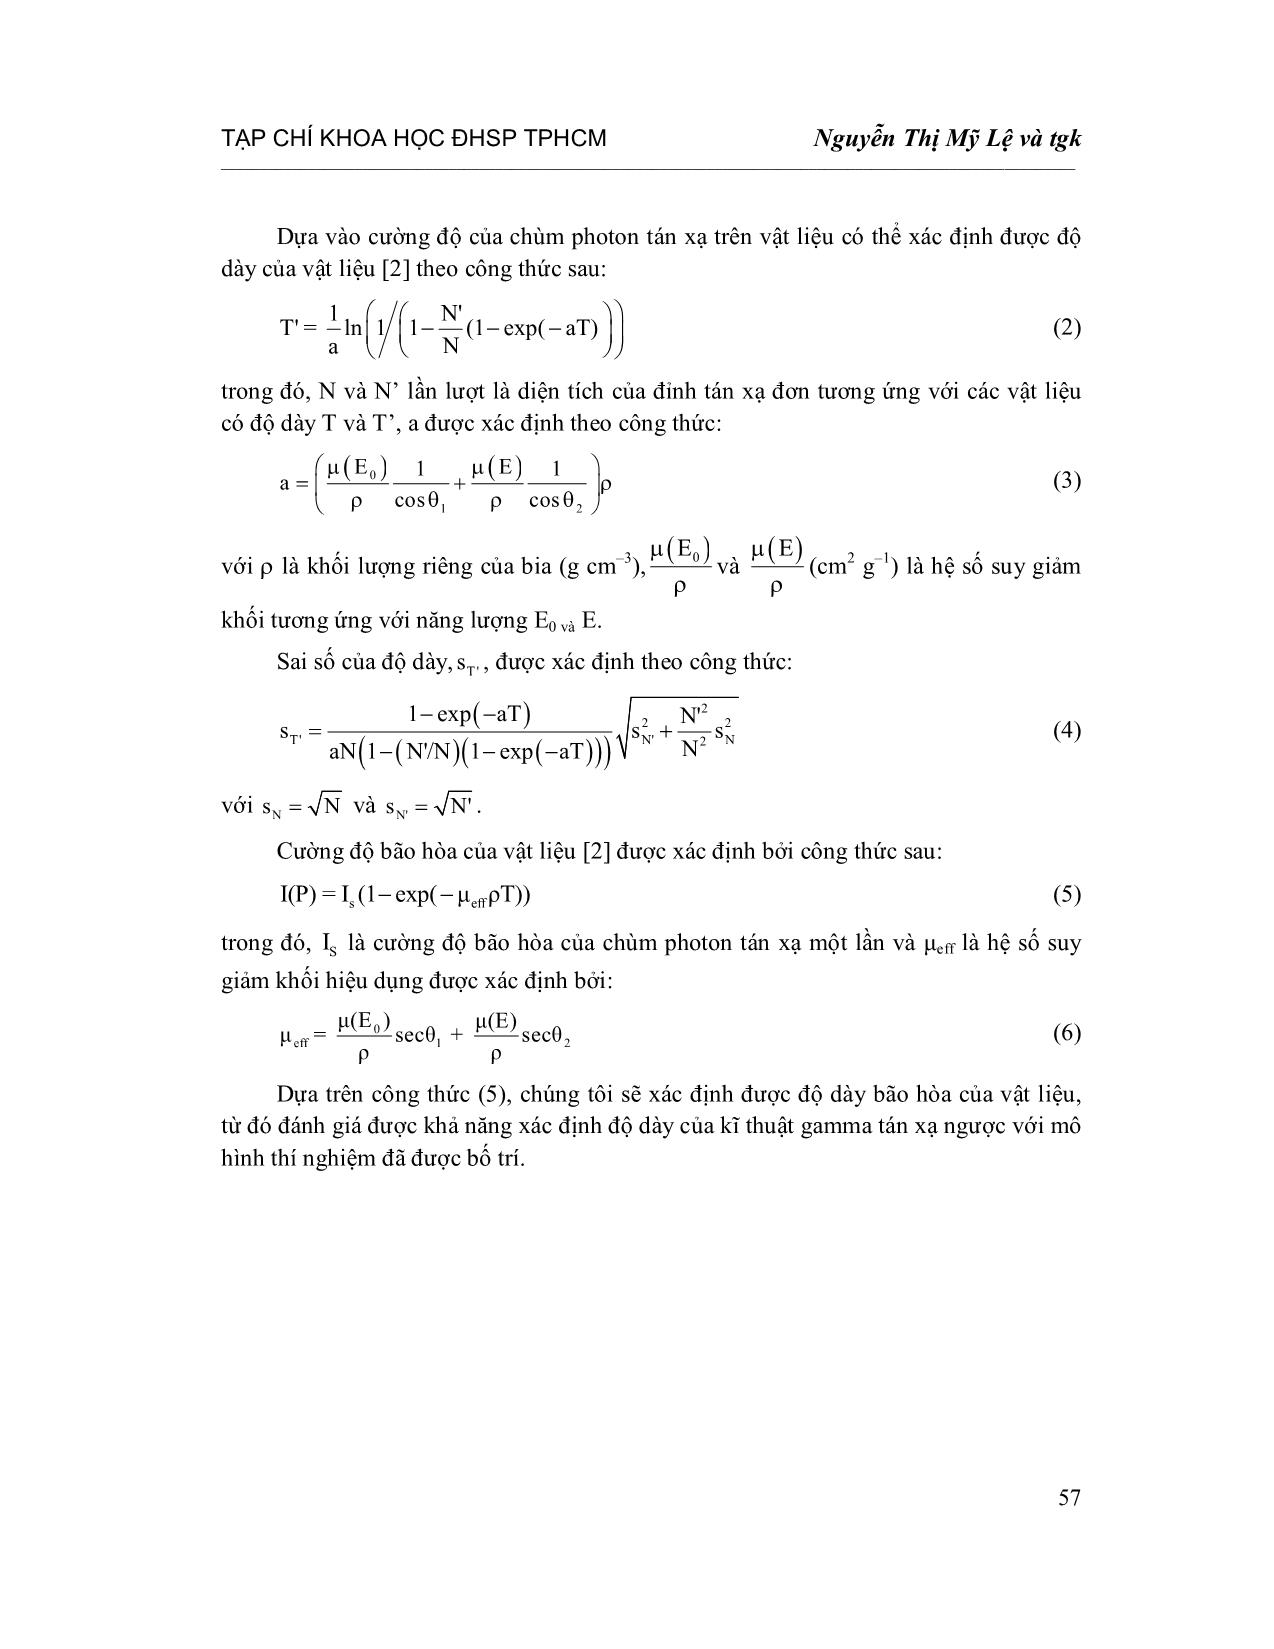 Áp dụng kĩ thuật Gamma tán xạ ngược để xác định độ dày của thành bình bằng phương pháp Monte Carlo trang 3